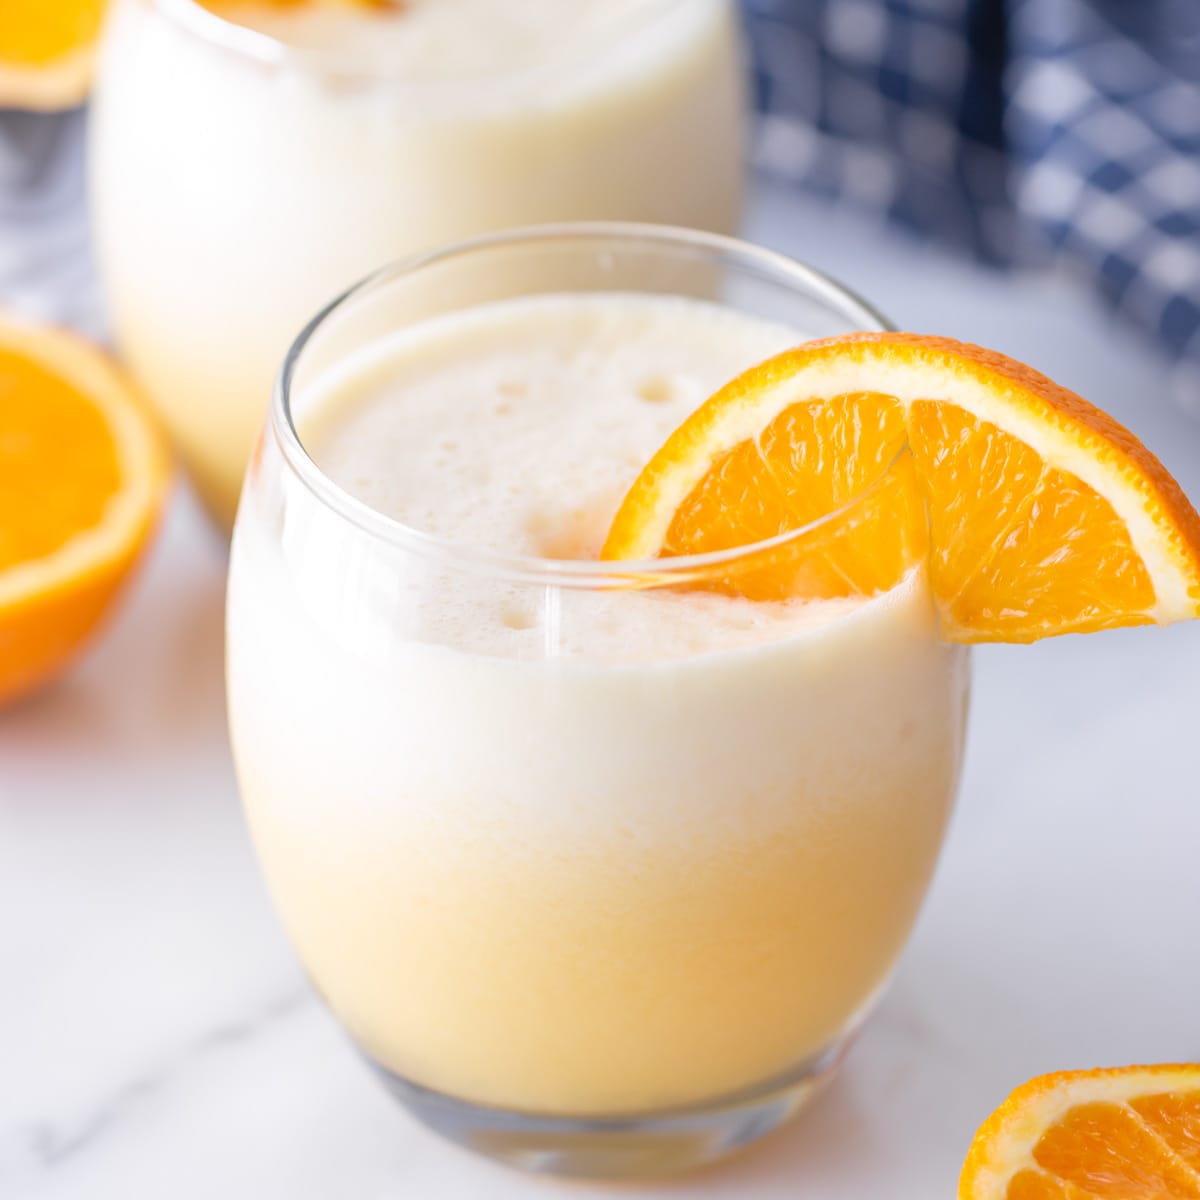 7月4日饮料——小玻璃杯里的山寨橙汁朱利叶斯，杯沿上有一片新鲜的橙片。